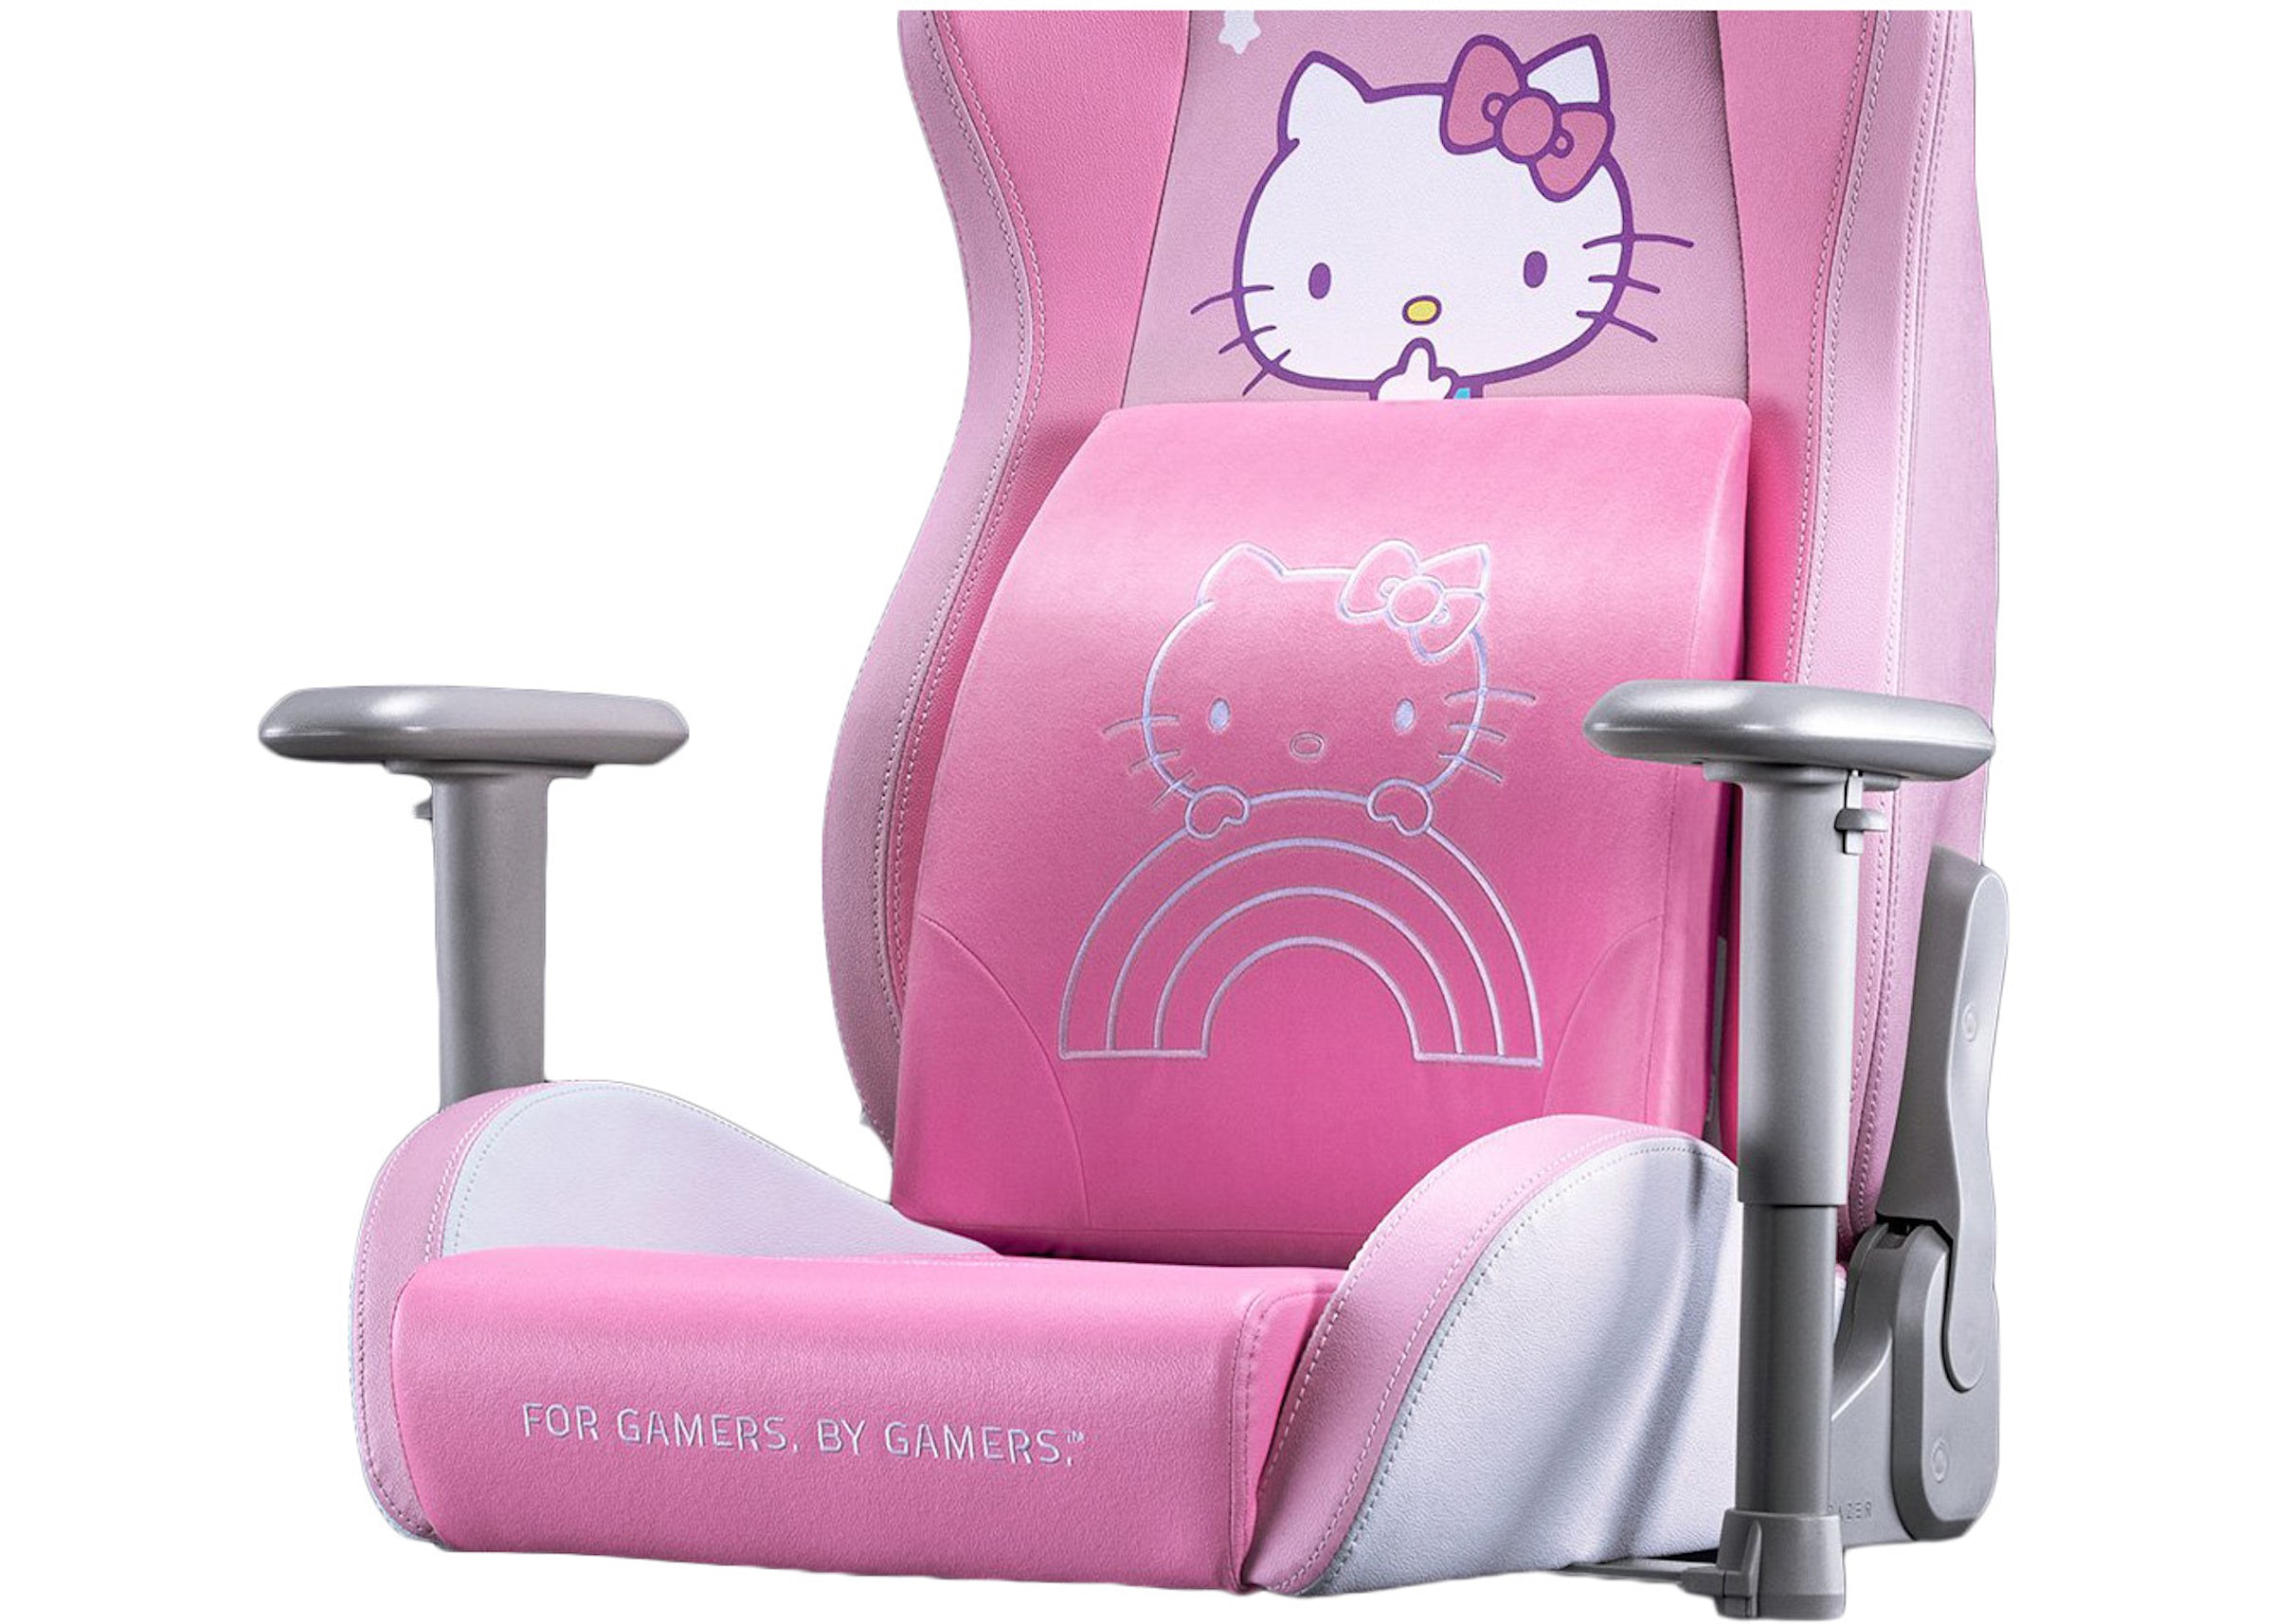 Razer Lumbar Cushion Hello Kitty and Friends Edition RC81-03830201-R3M1 - US